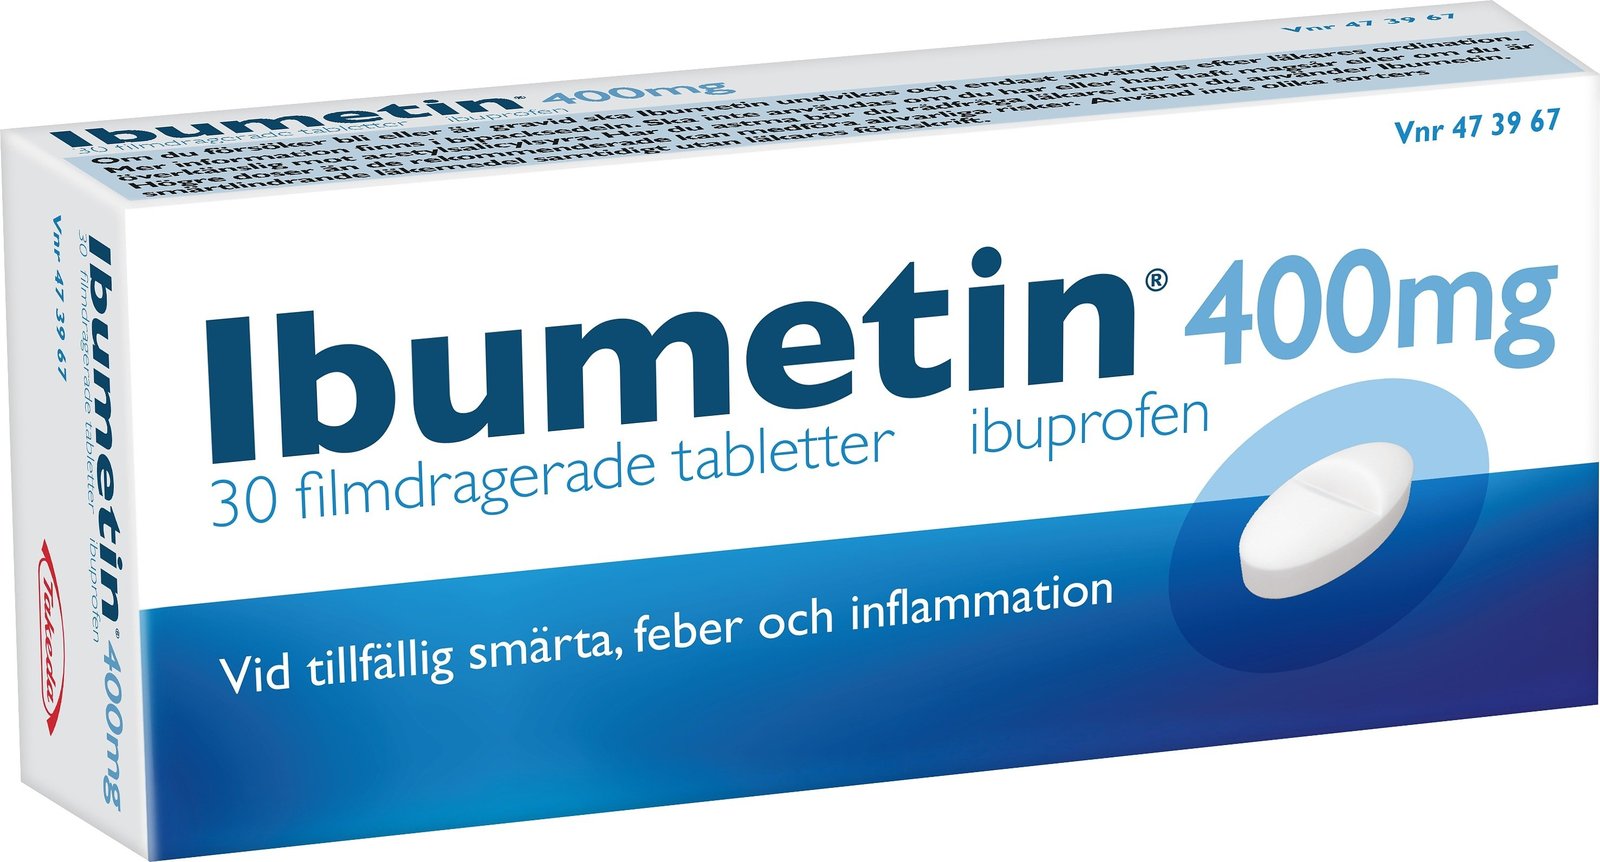 Ibumetin 400mg Ibuprofen 30 tabletter